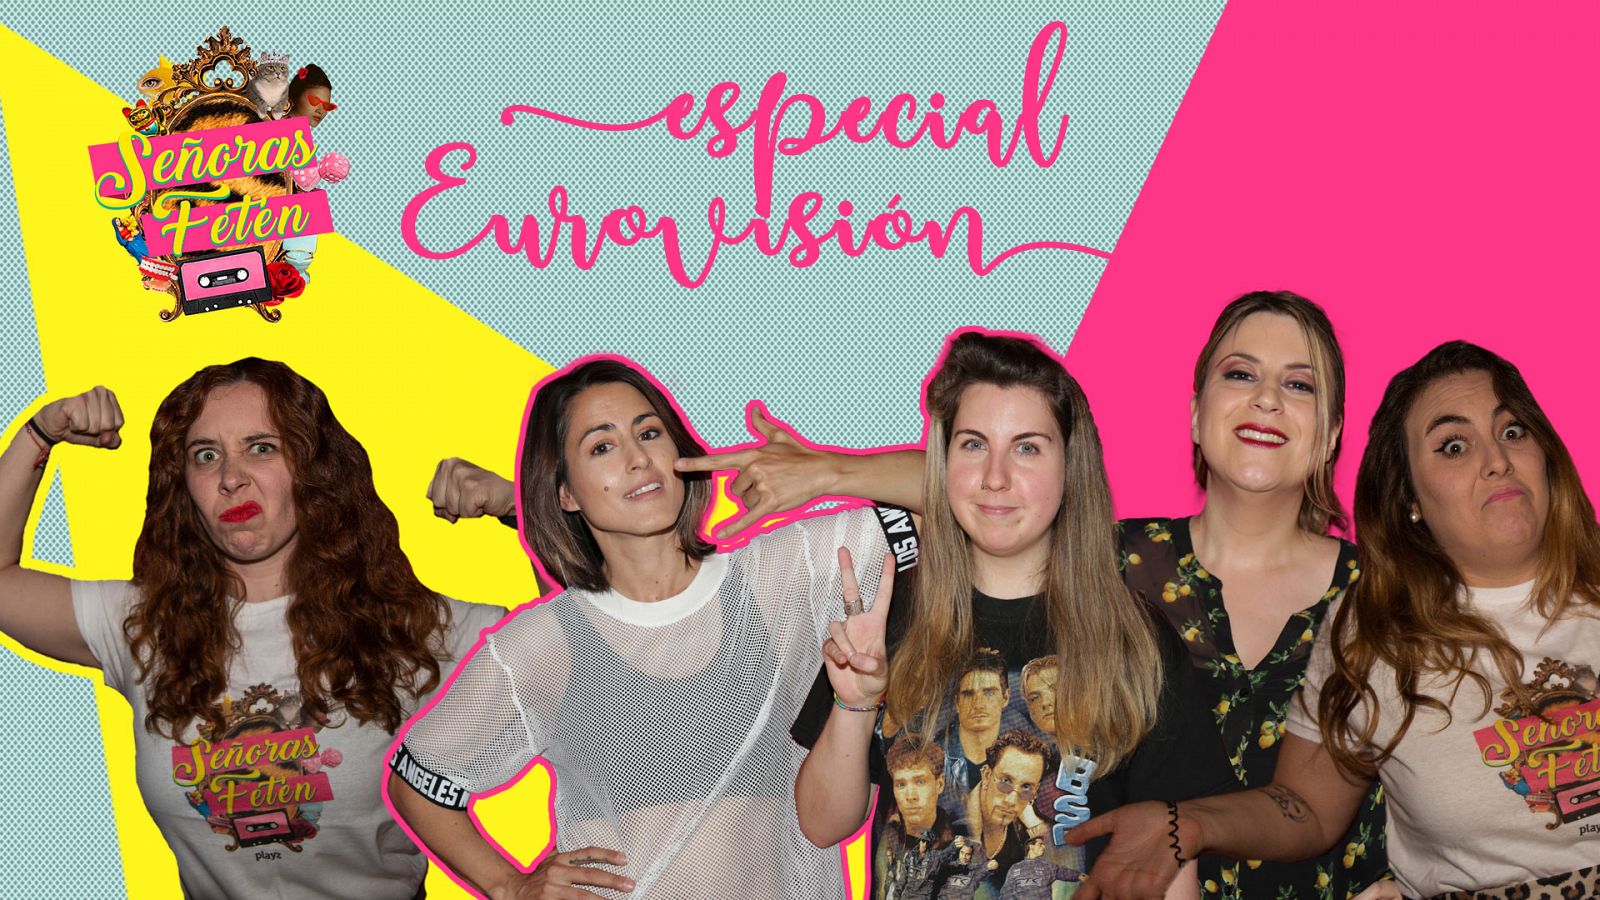 Señoras Fetén - Mira el programa: 'Especial Eurovisión' con Barei, Percebes y Grelos e Irene Mahía